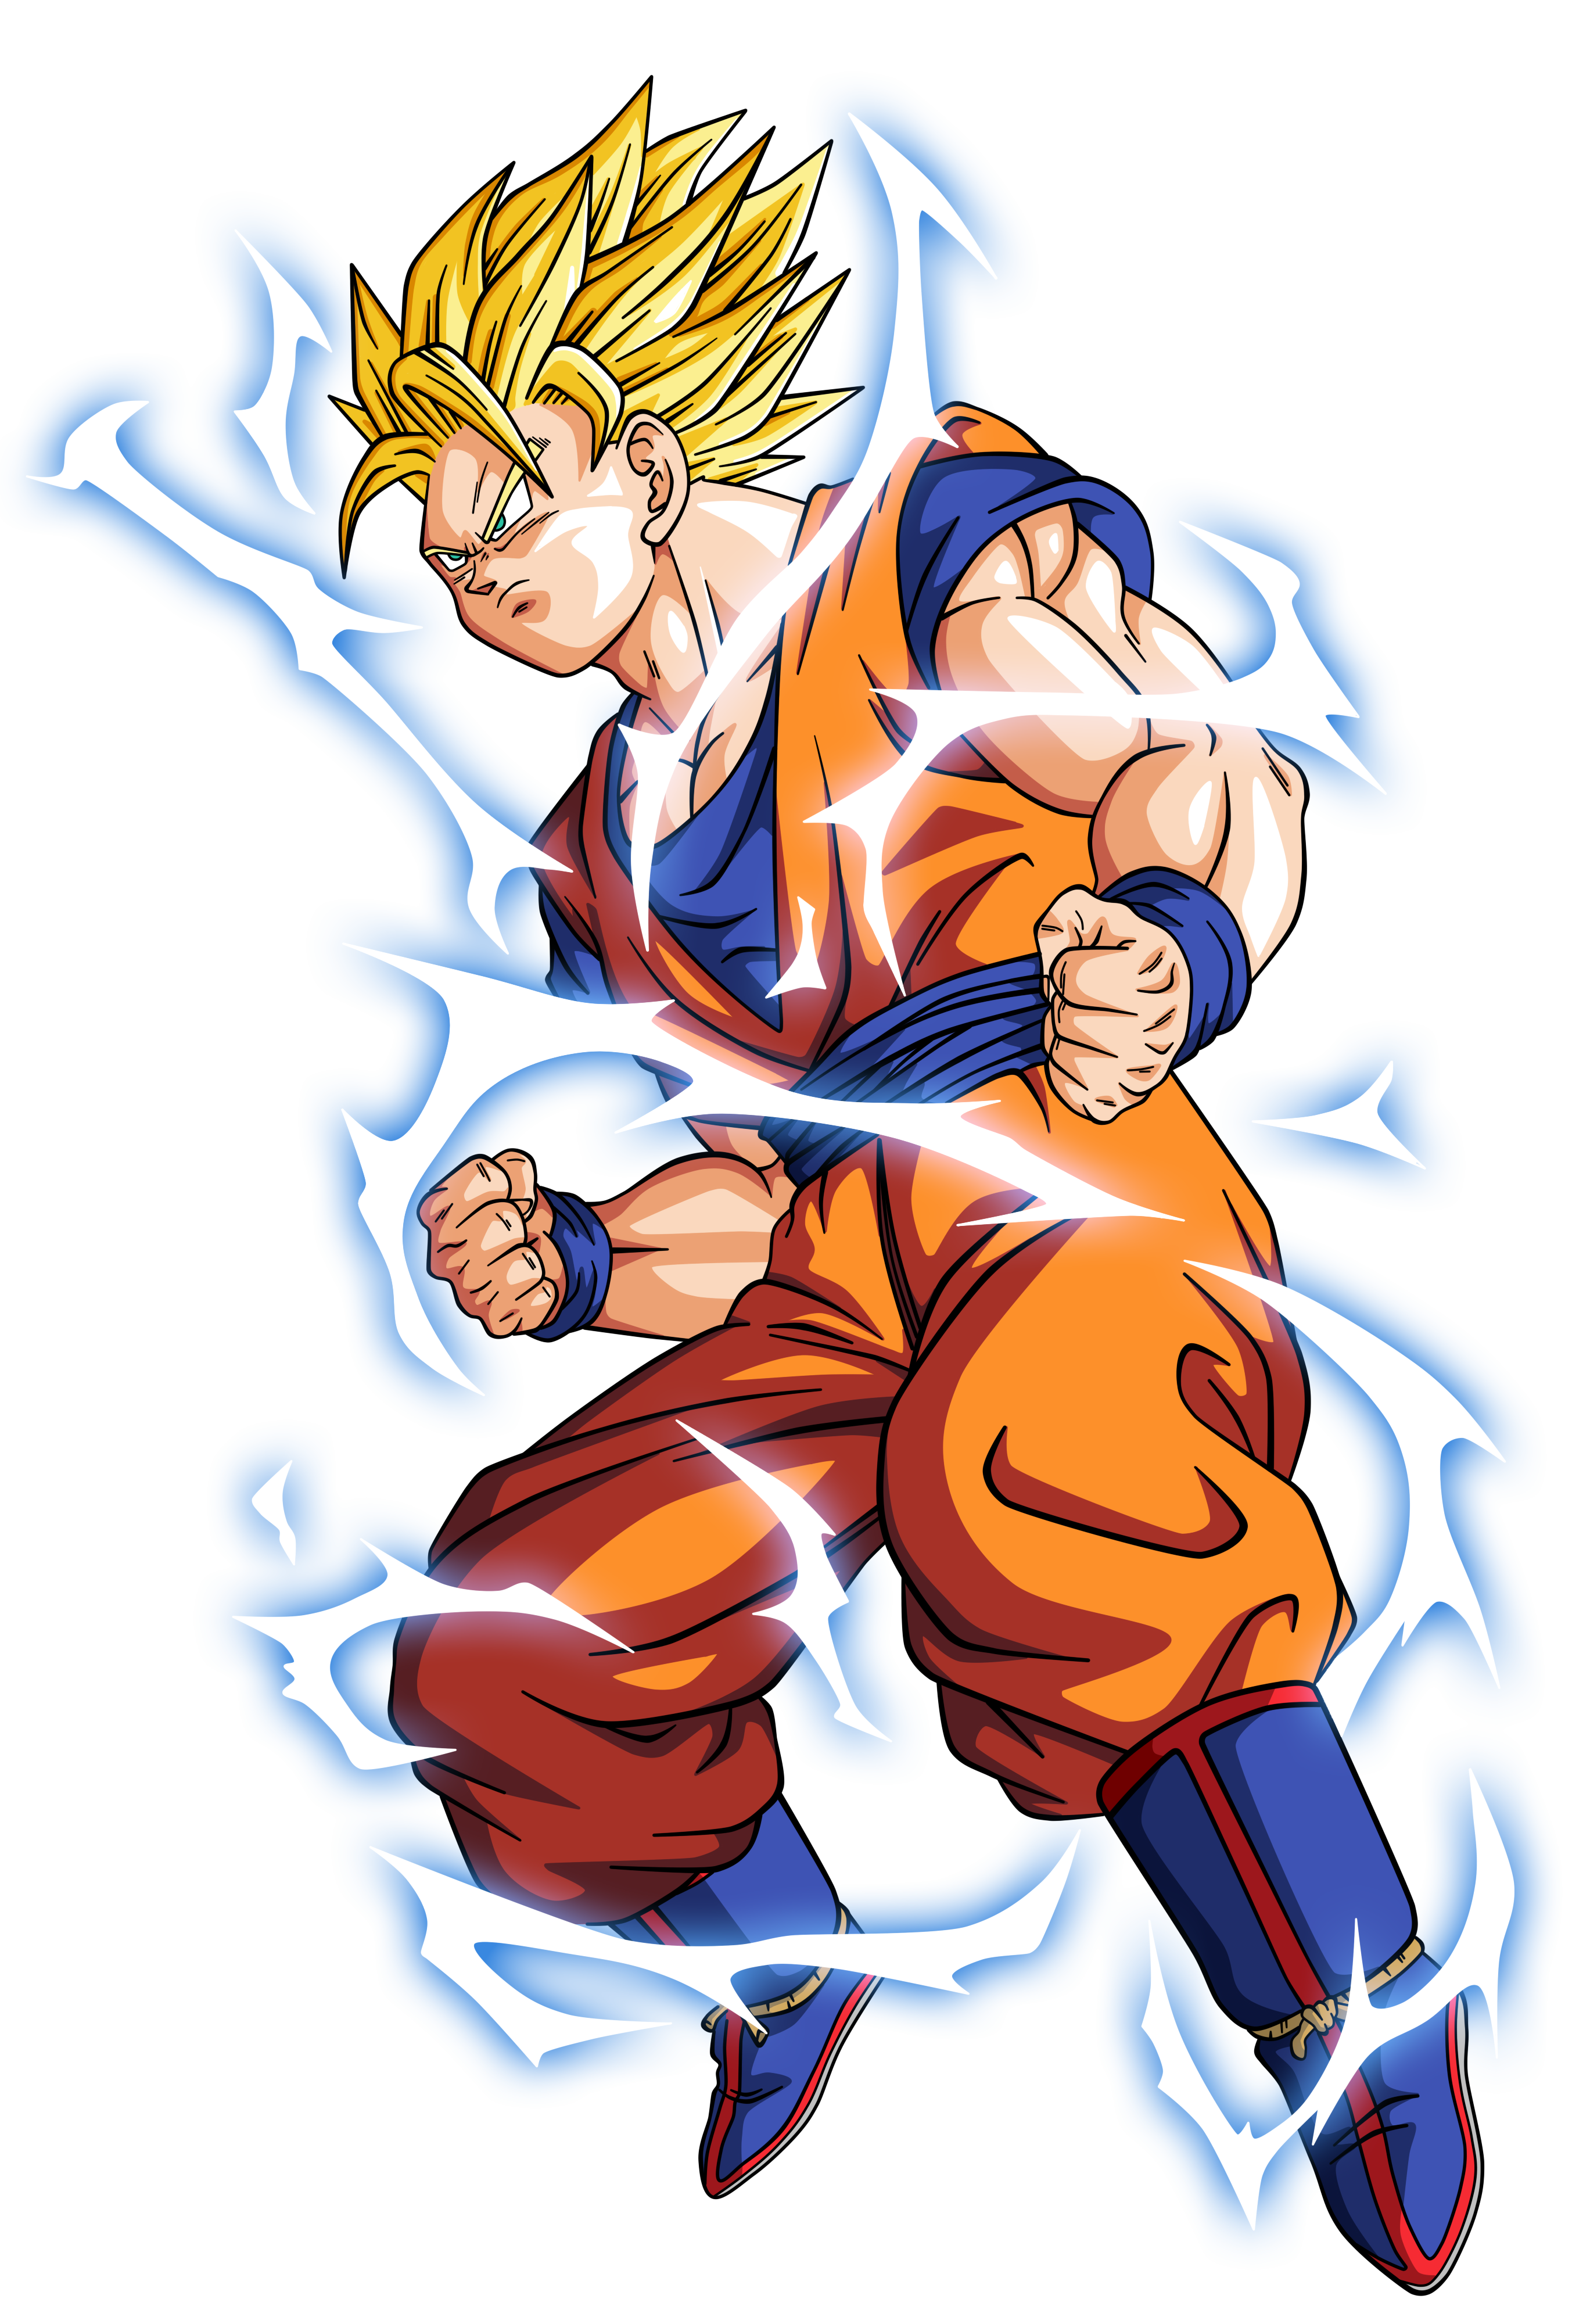 Goku Super Saiyan Goddrawings Logo Image for Free - Free Logo Image